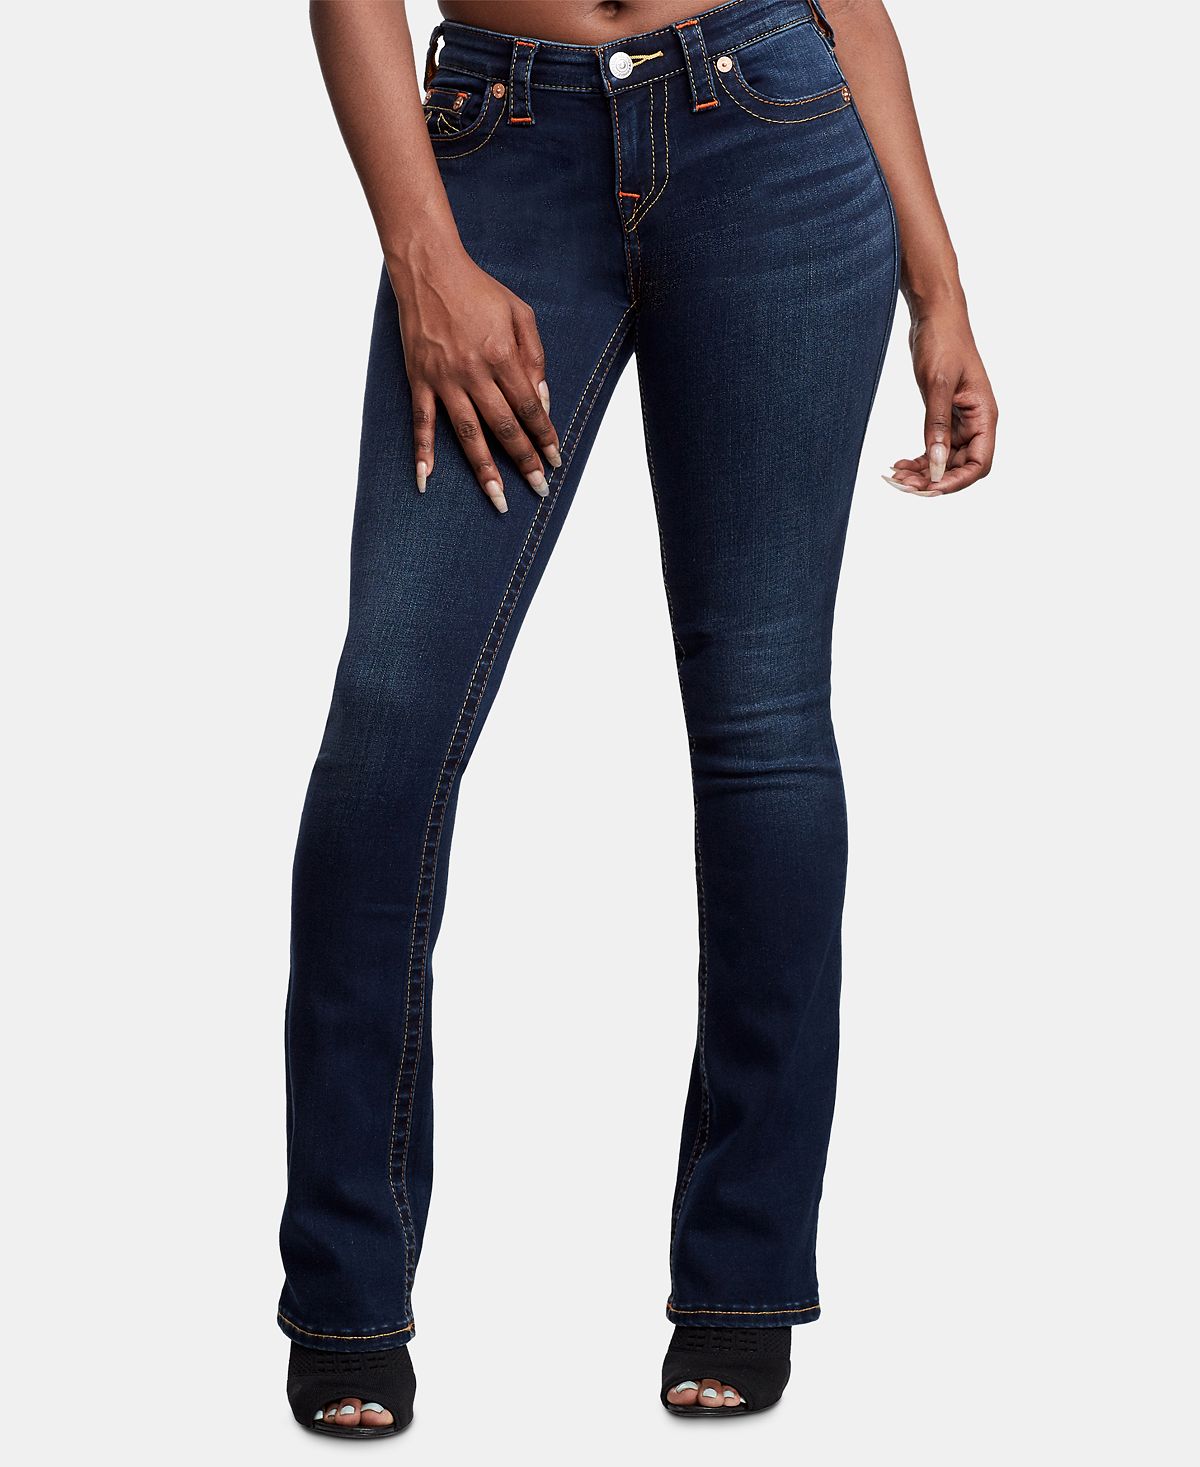 Эластичные прямые джинсы Billie со средней посадкой True Religion bloodseeker minimal